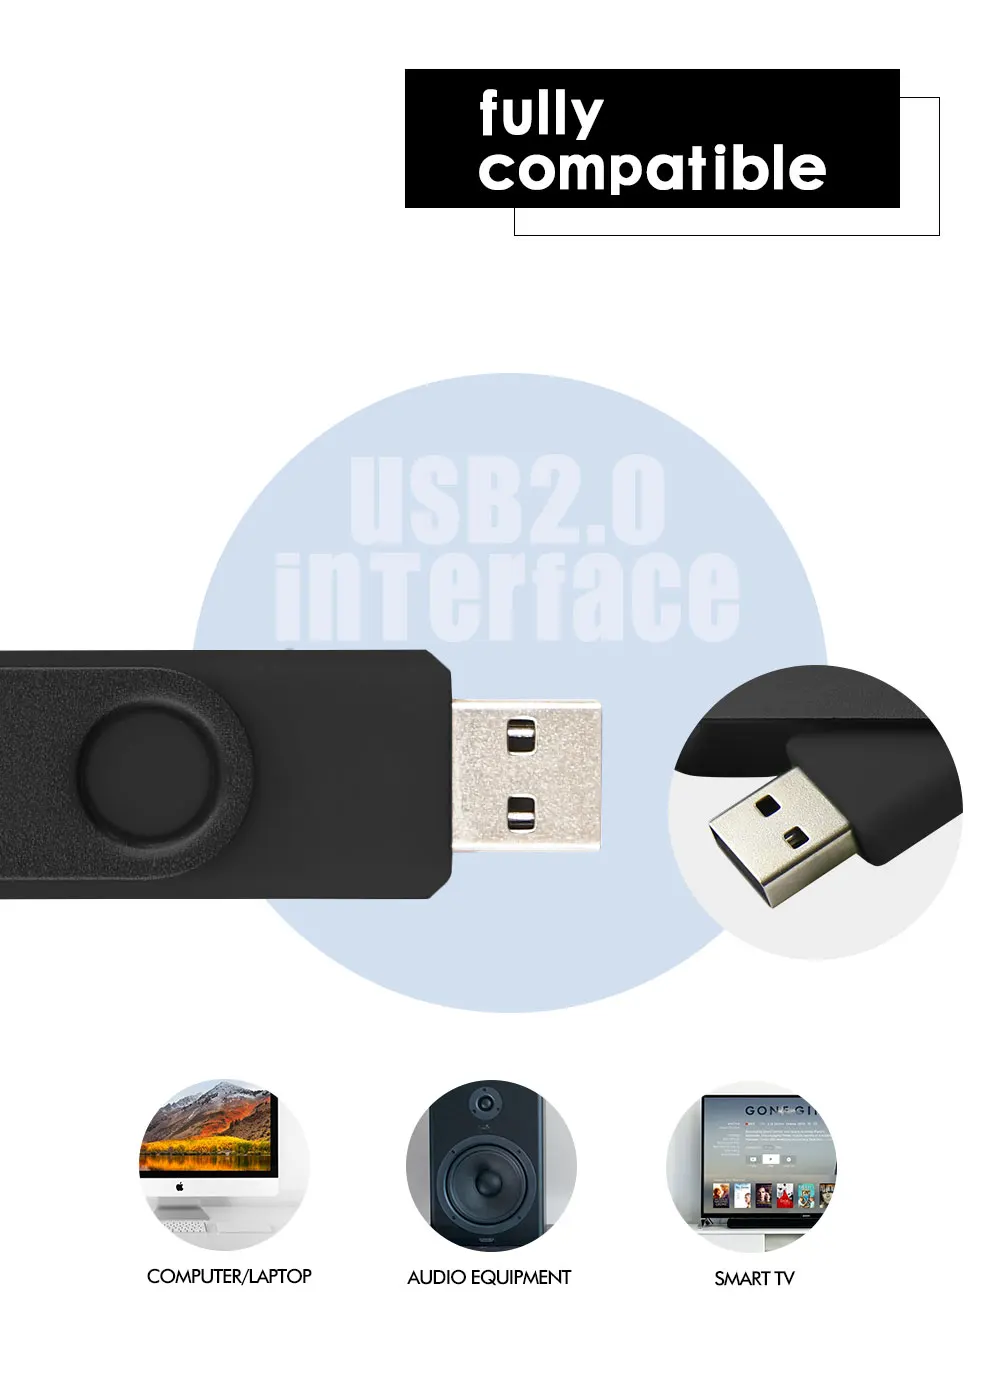 Флеш-накопитель для смартфонов OTG USB флеш-накопитель cle usb 2,0 флеш-накопитель 64G otg 4g 8g 16g 32g 128G устройства для хранения